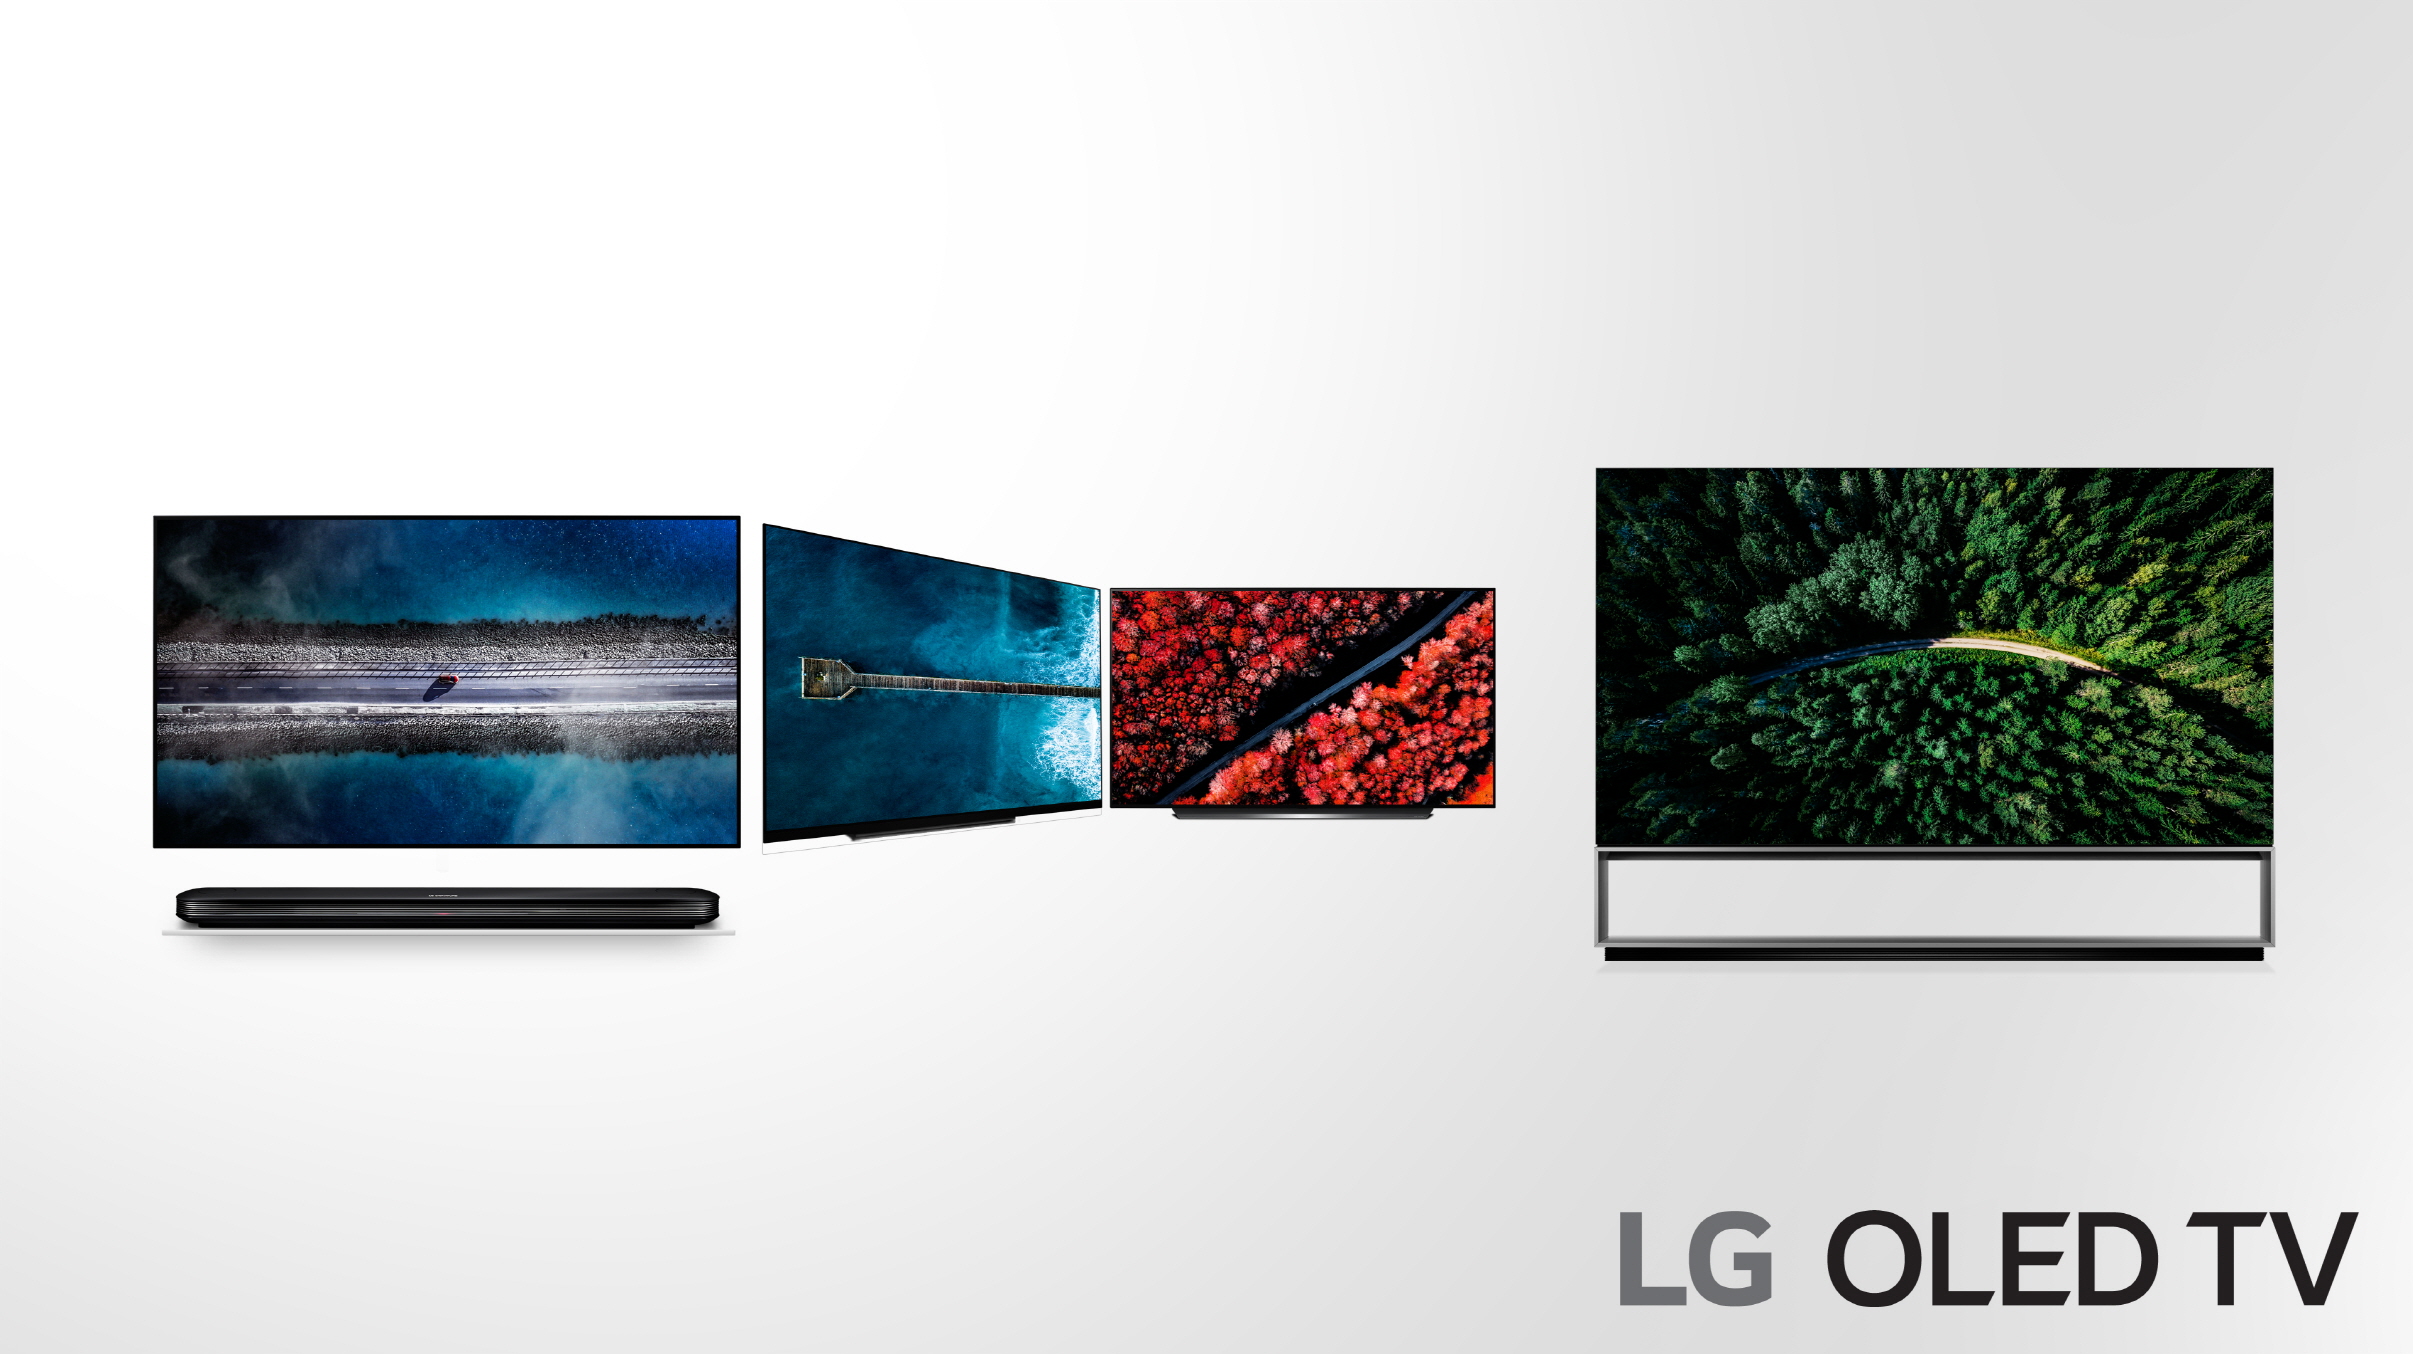 LG OLED TV Range.jpg